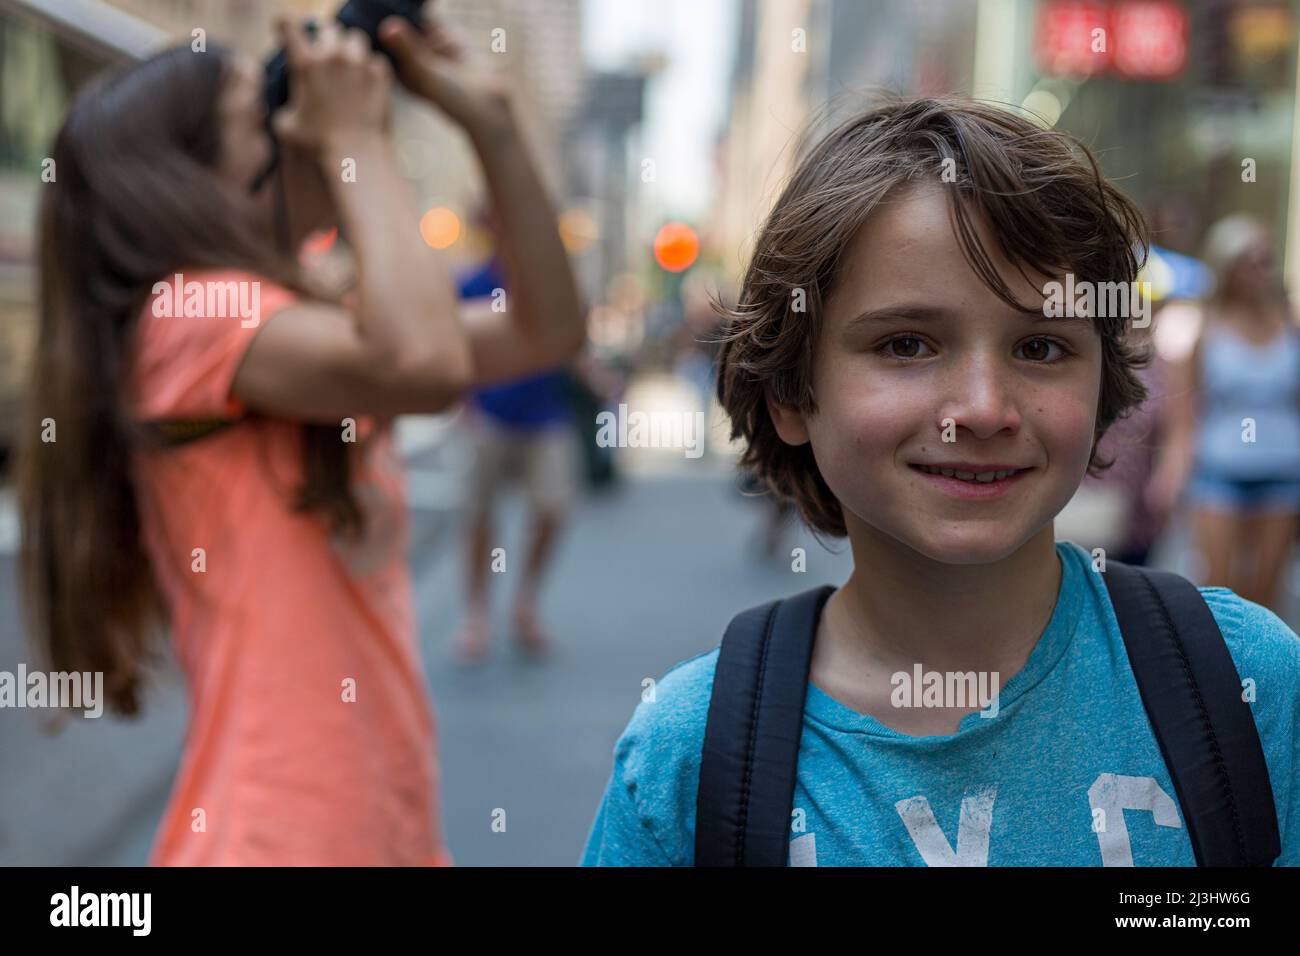 5 Avenue & West 54 Street, New York City, NY, États-Unis, jeune fille de 14 ans de race blanche et adolescent de 12 ans de race blanche, tous deux avec des cheveux bruns et un style estival dans les rues Banque D'Images